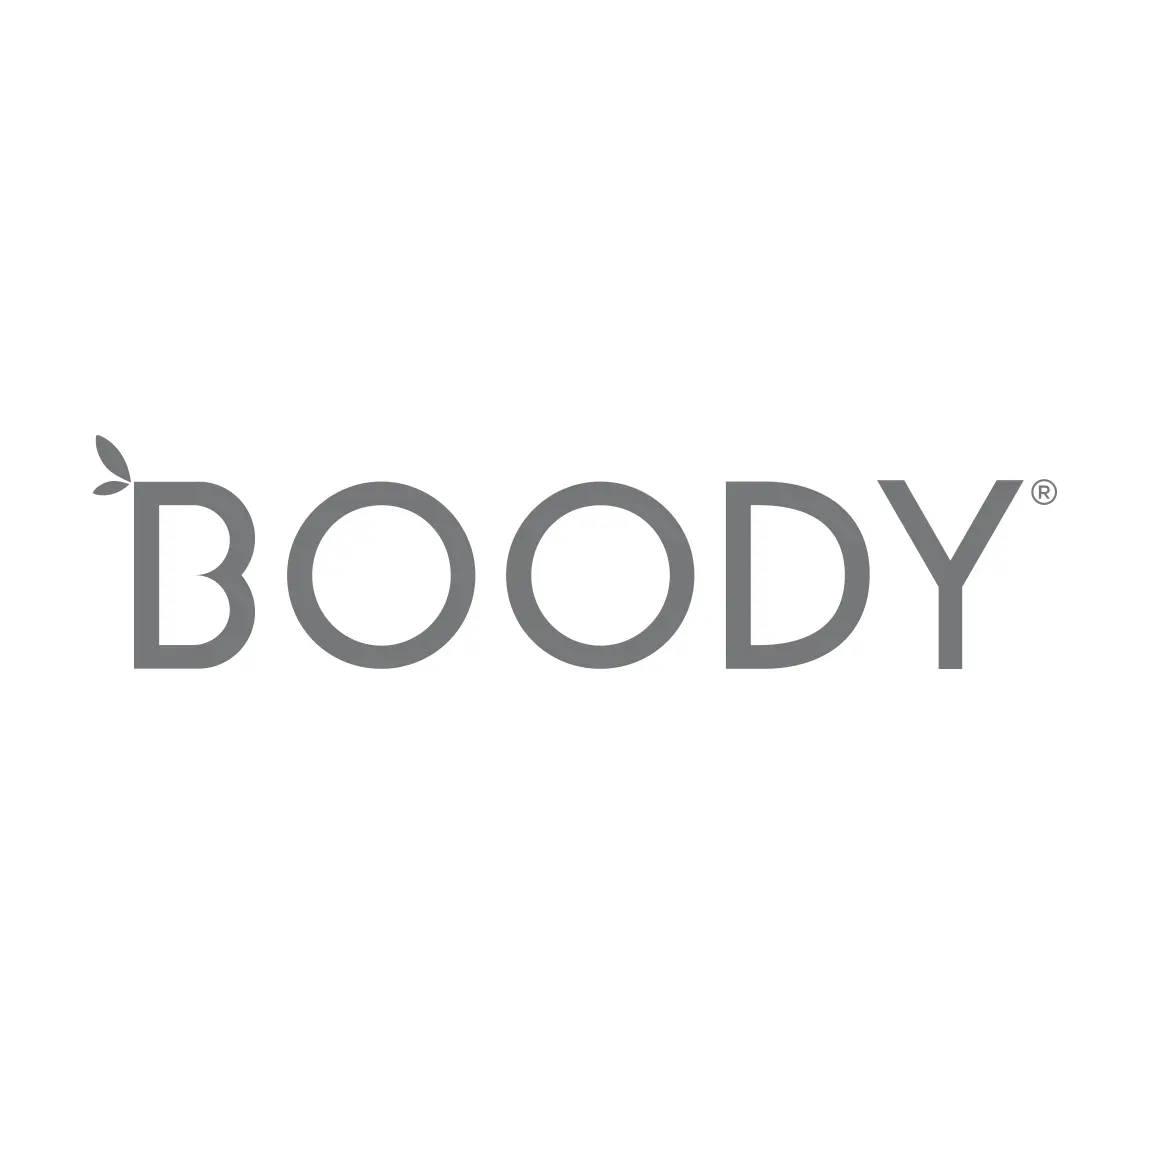 Boody - The Green Hub